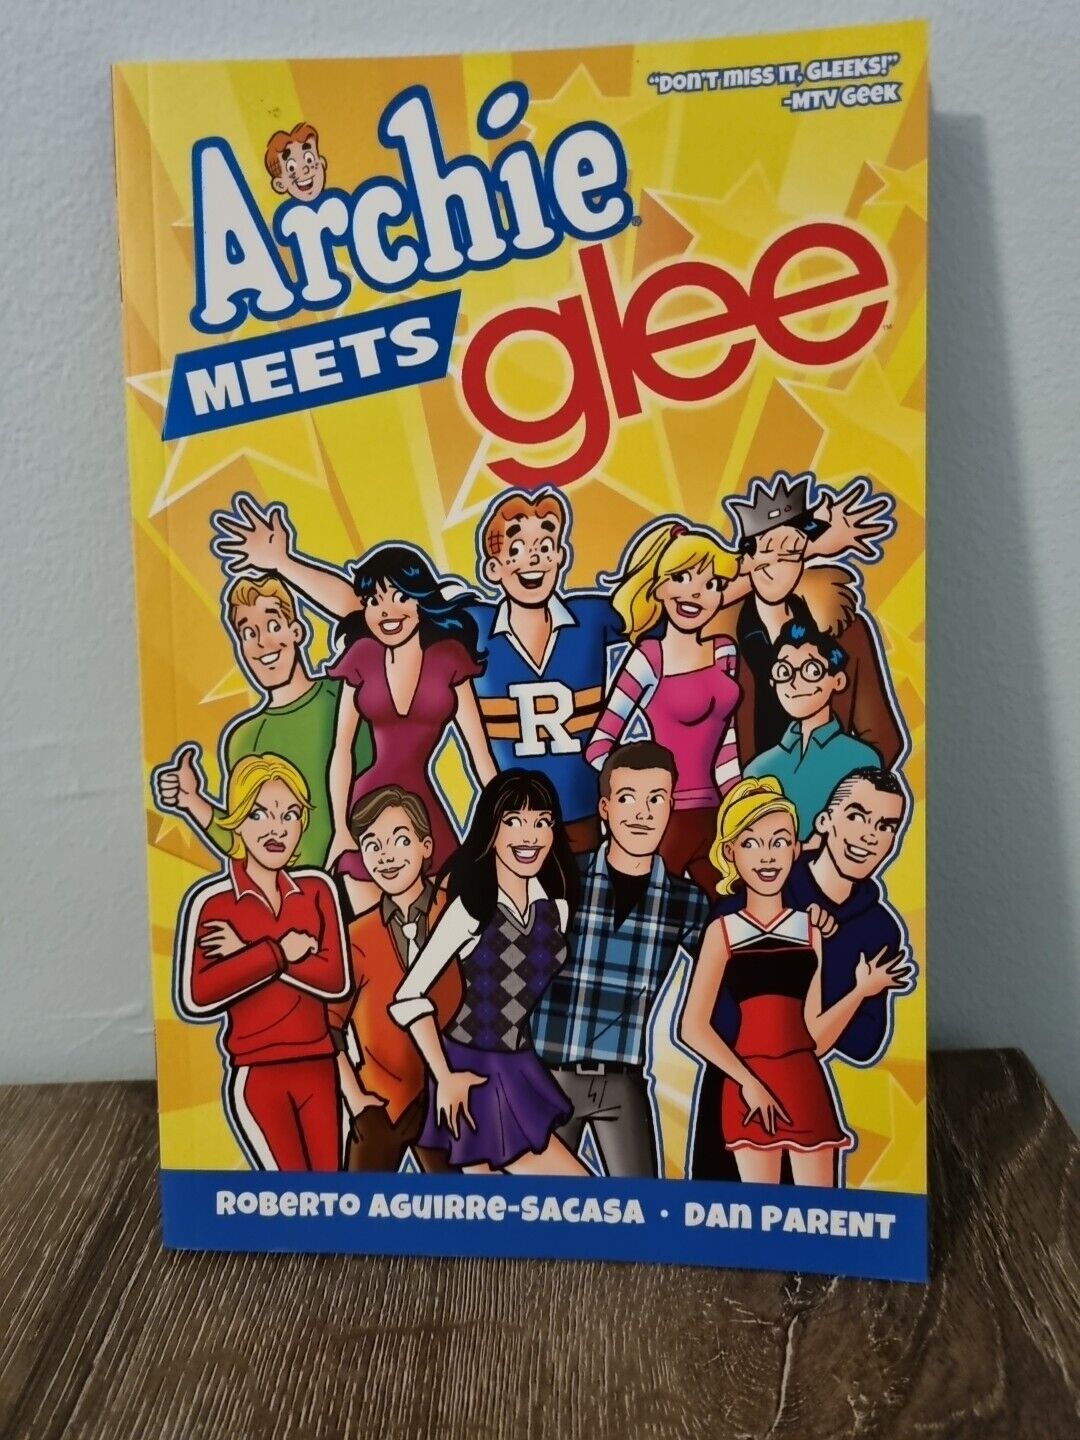 Archie Meets Glee (ARCHIE COMICS Publications, Inc. 2013)